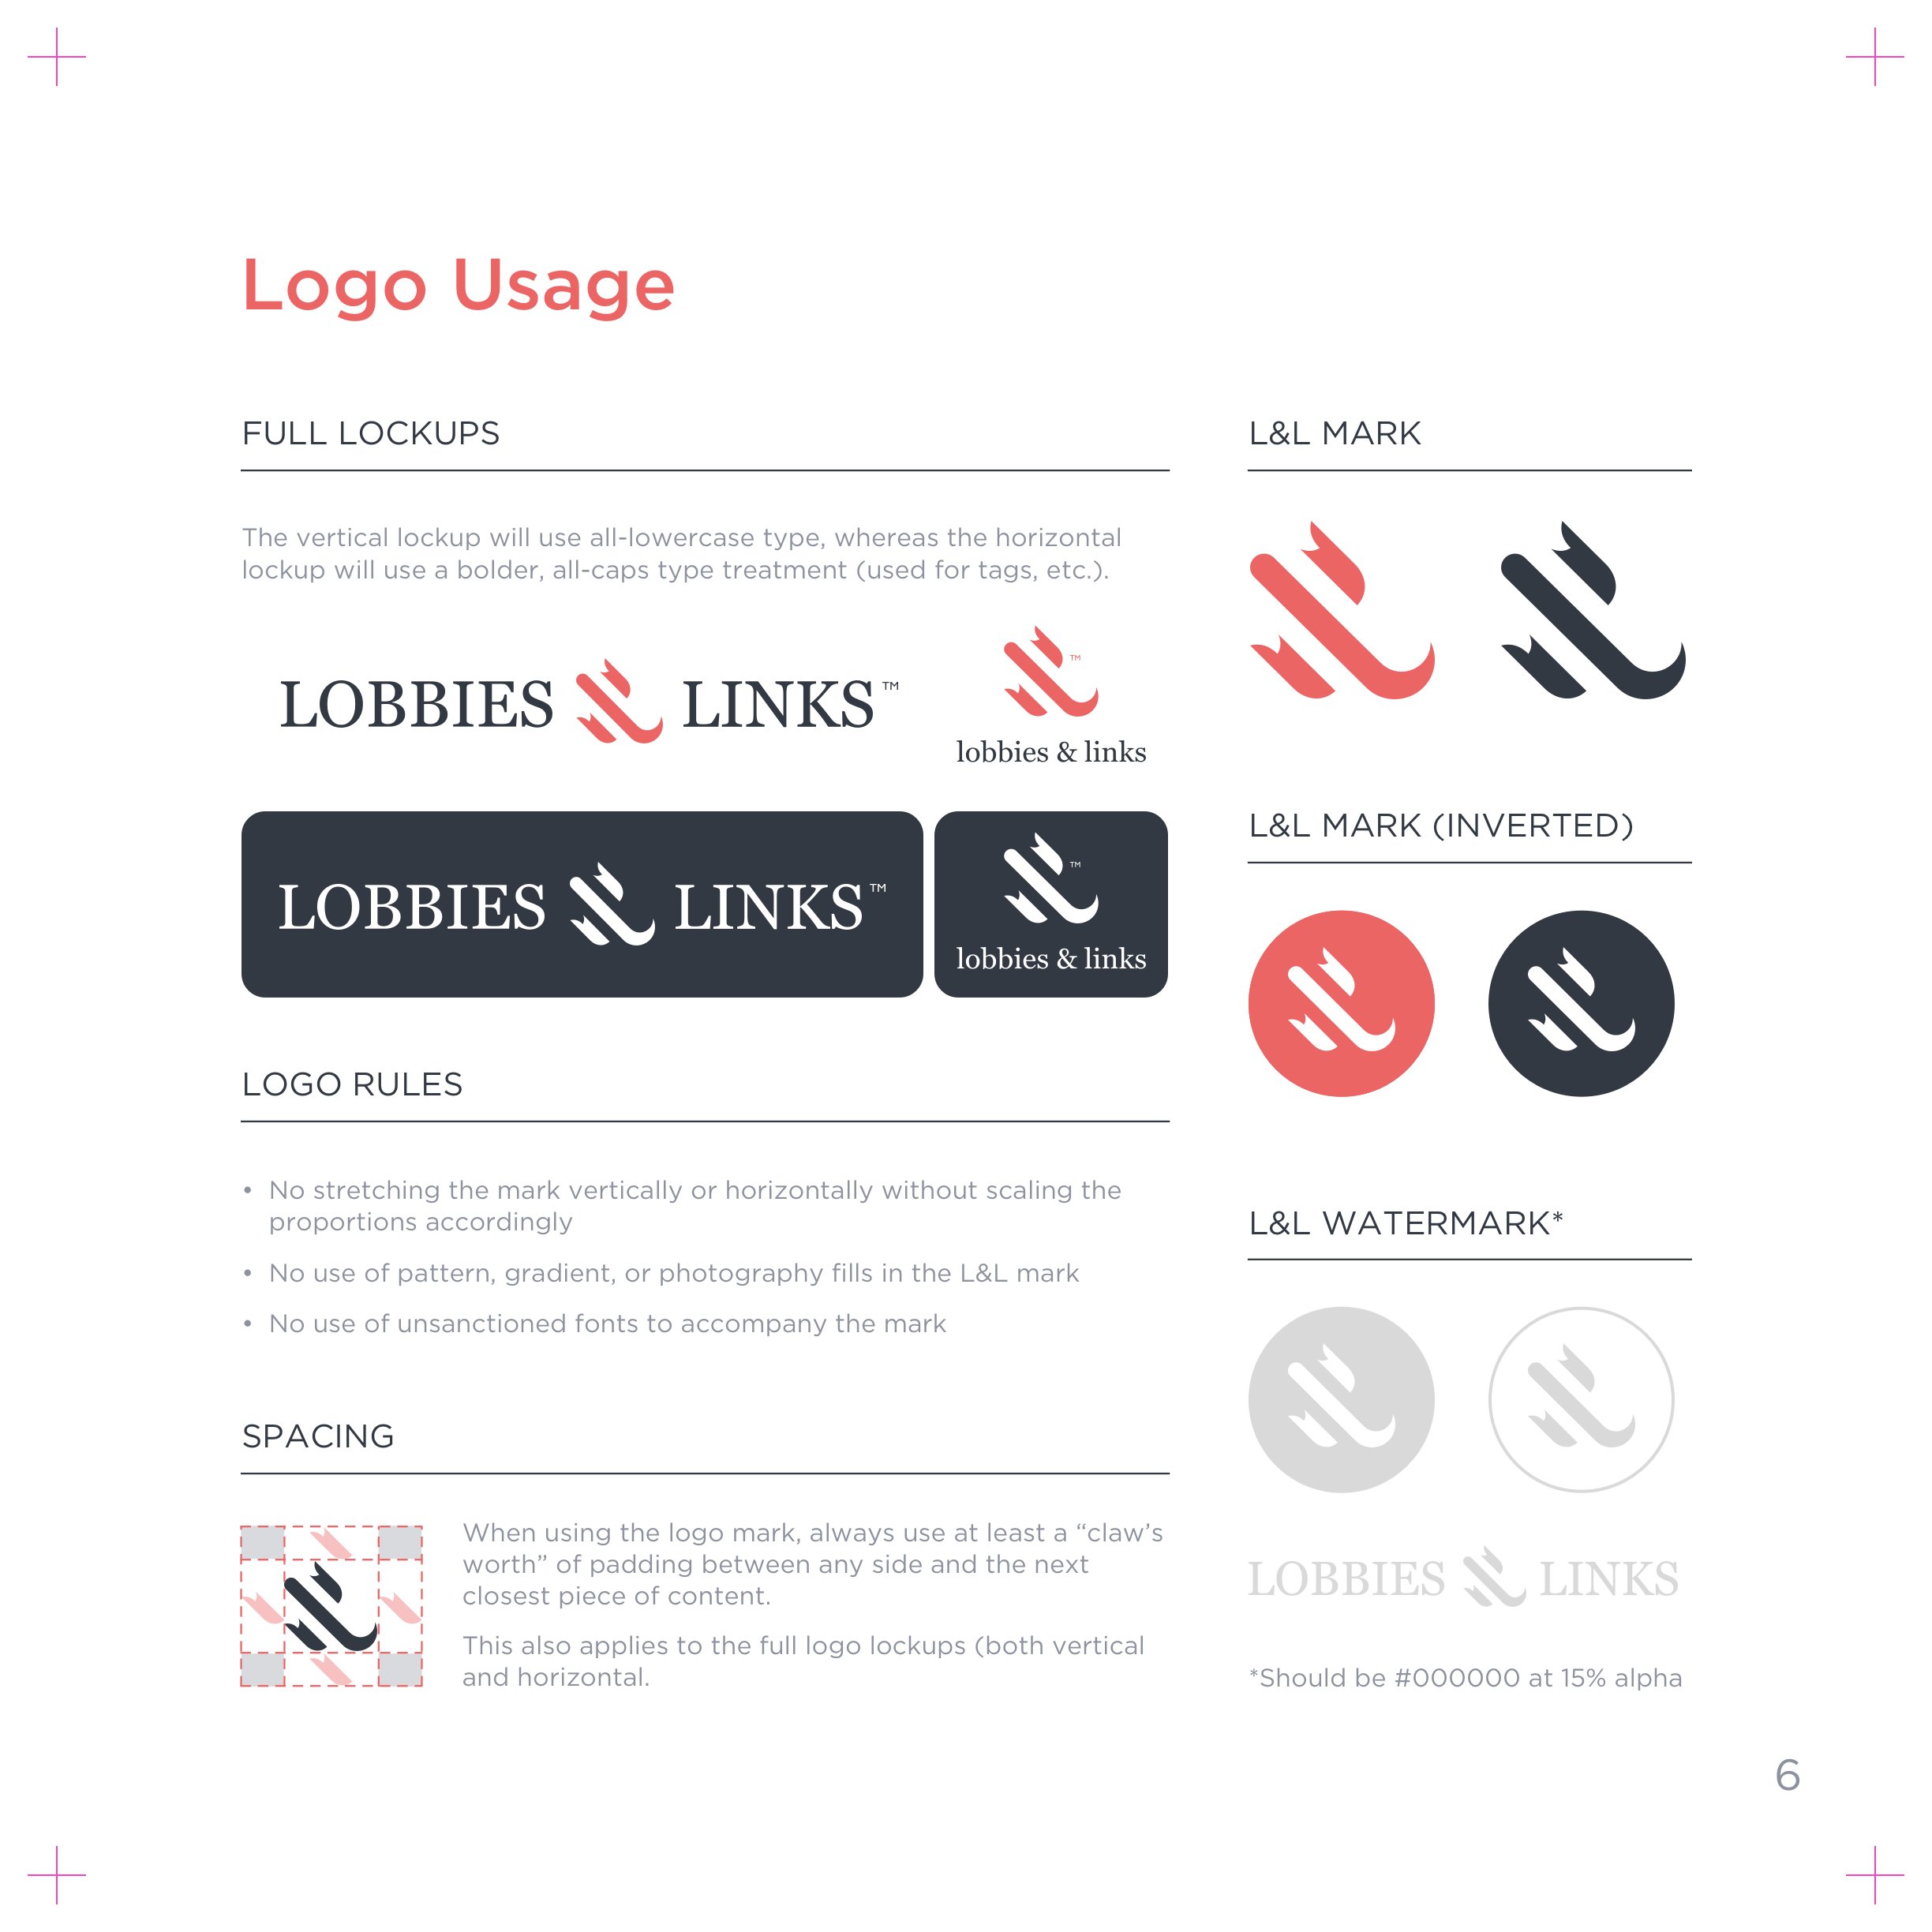 06_L&L_BrandBook_LogoUsage Copy.jpg